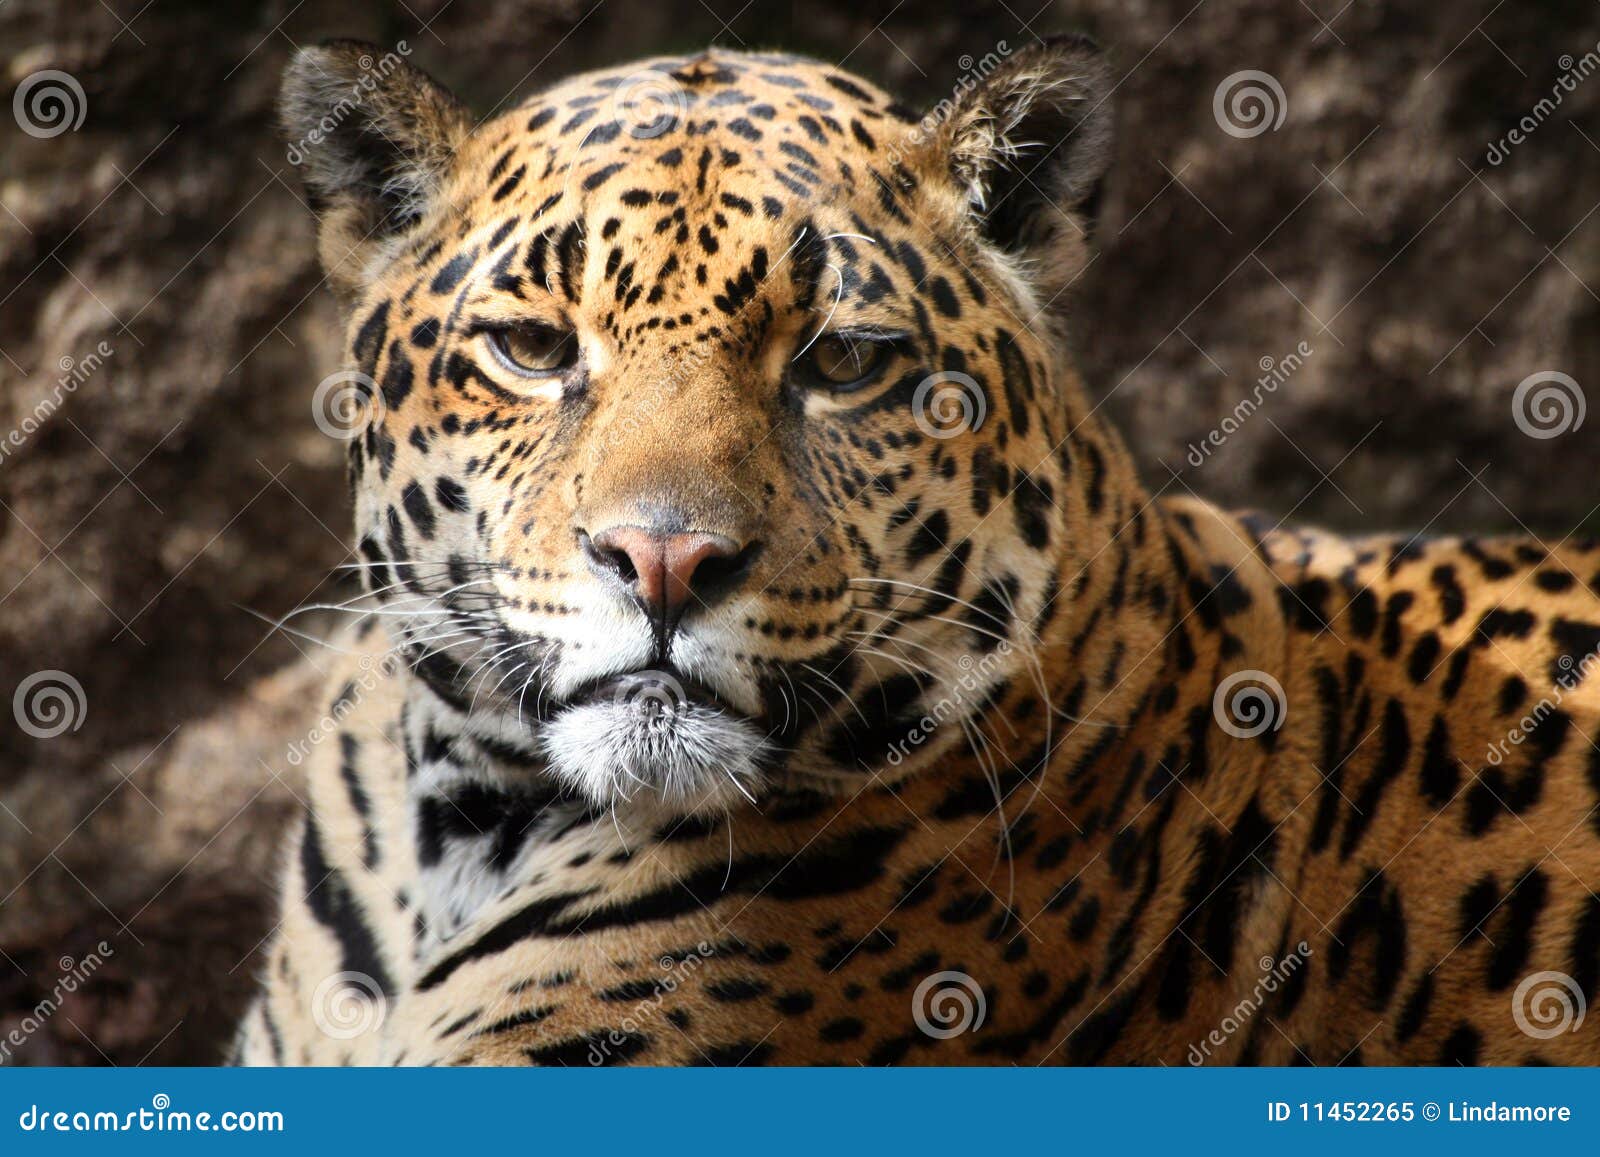 jaguar staring at camera